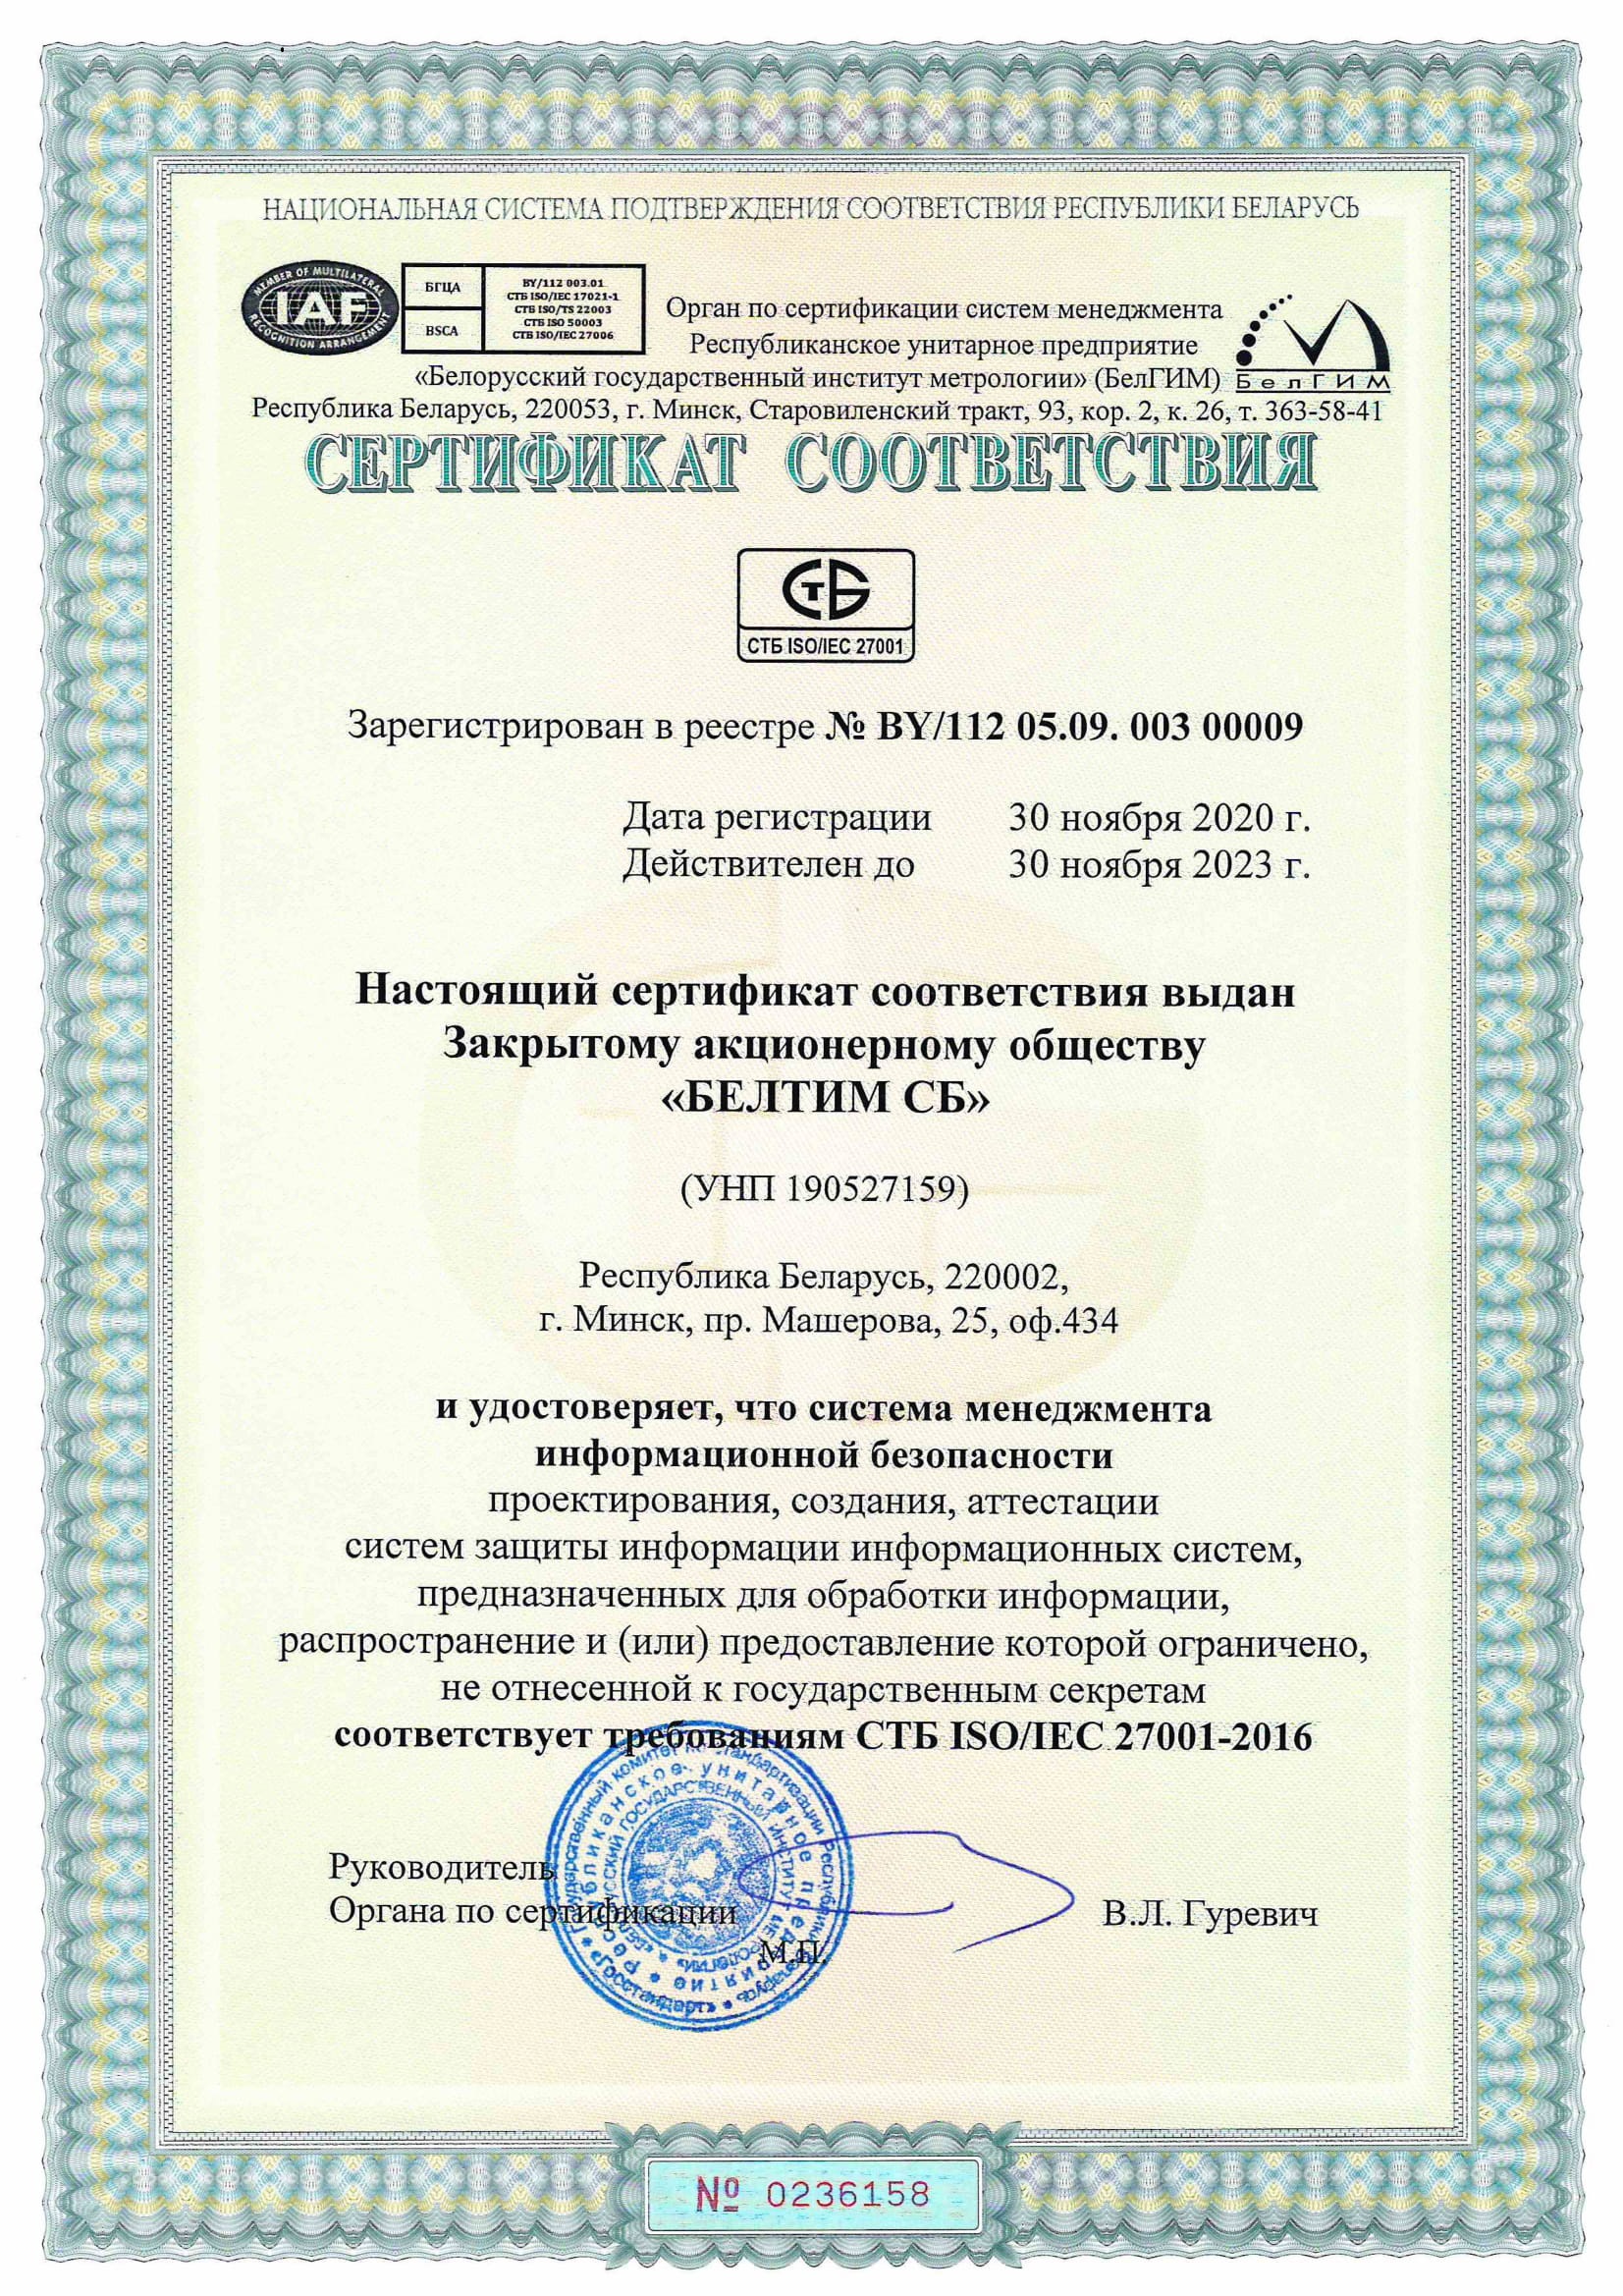 Сертификат соответствия СТБ ISO/IEC 27001-2016